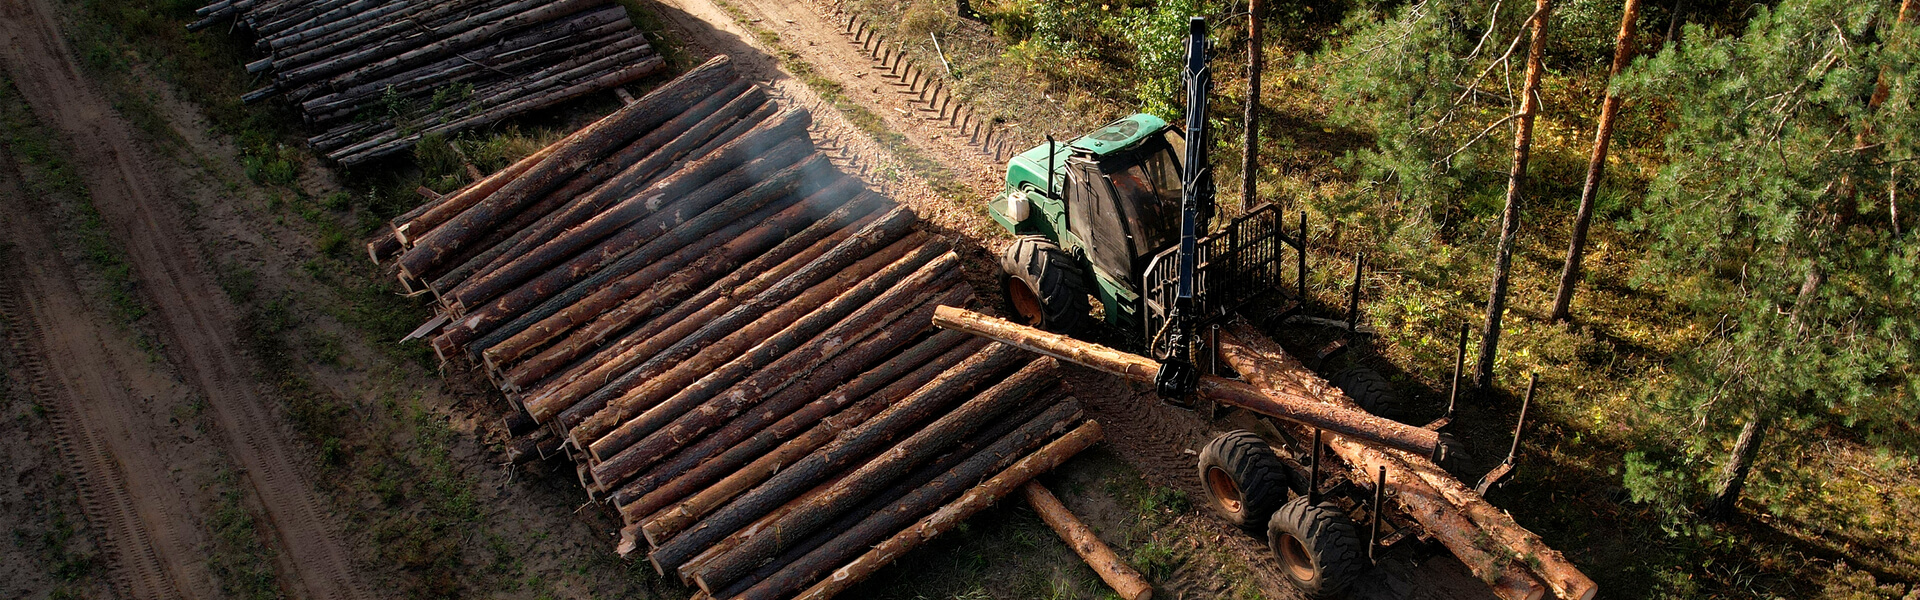 Tiềm năng của Timber Harvesting hiện đang là vấn đề nóng trên thị trường gỗ. Bạn sẽ cập nhật được những thông tin mới nhất về nó thông qua việc xem các hình ảnh và bài viết liên quan đến Timber Harvesting. Và chắc chắn bạn sẽ khám phá ra những kỹ thuật mới mà đang được thực hiện một cách chuyên nghiệp và đảm bảo giá trị.